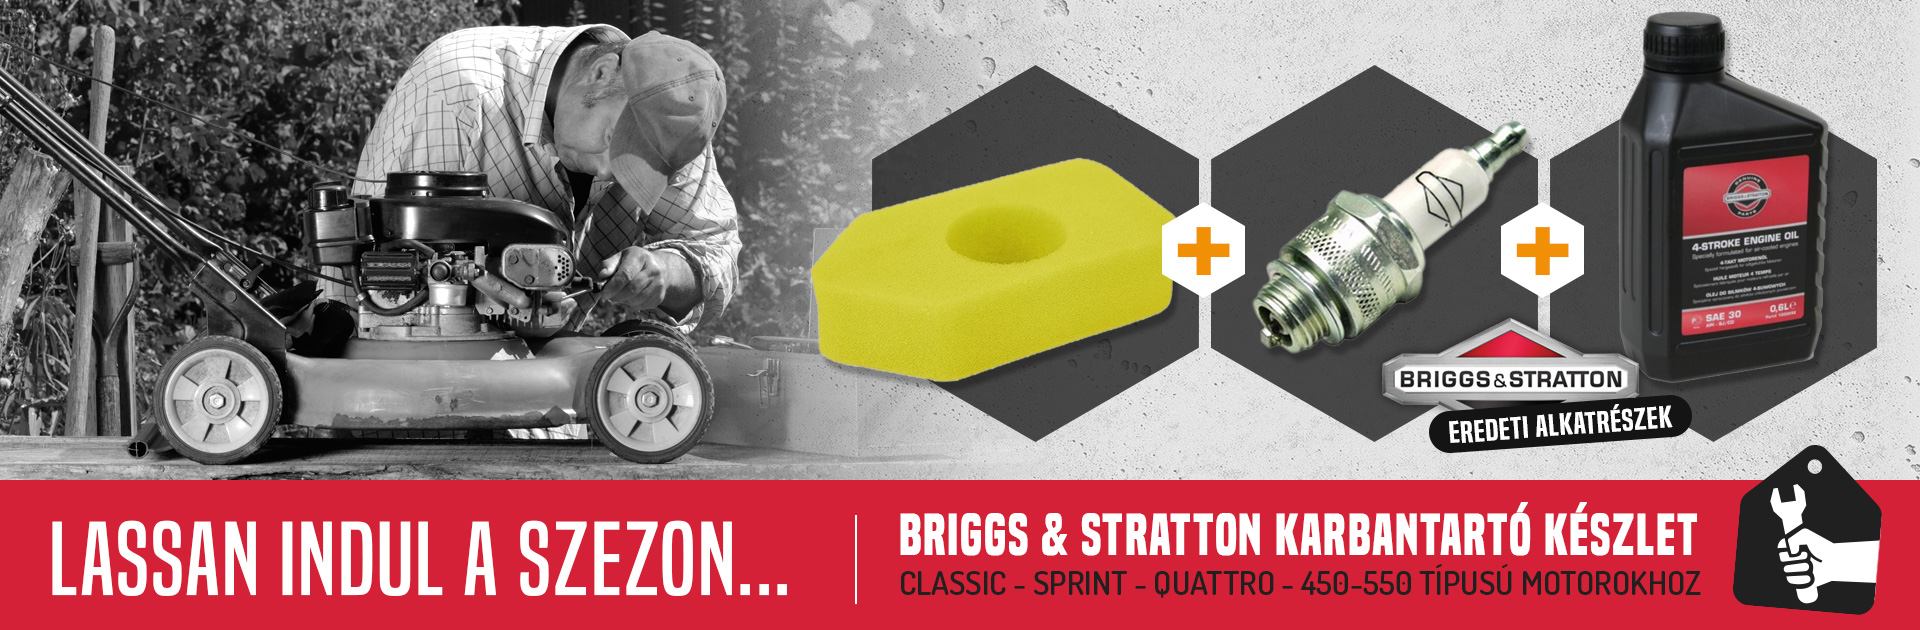 Briggs & Stratton karbantartó készlet